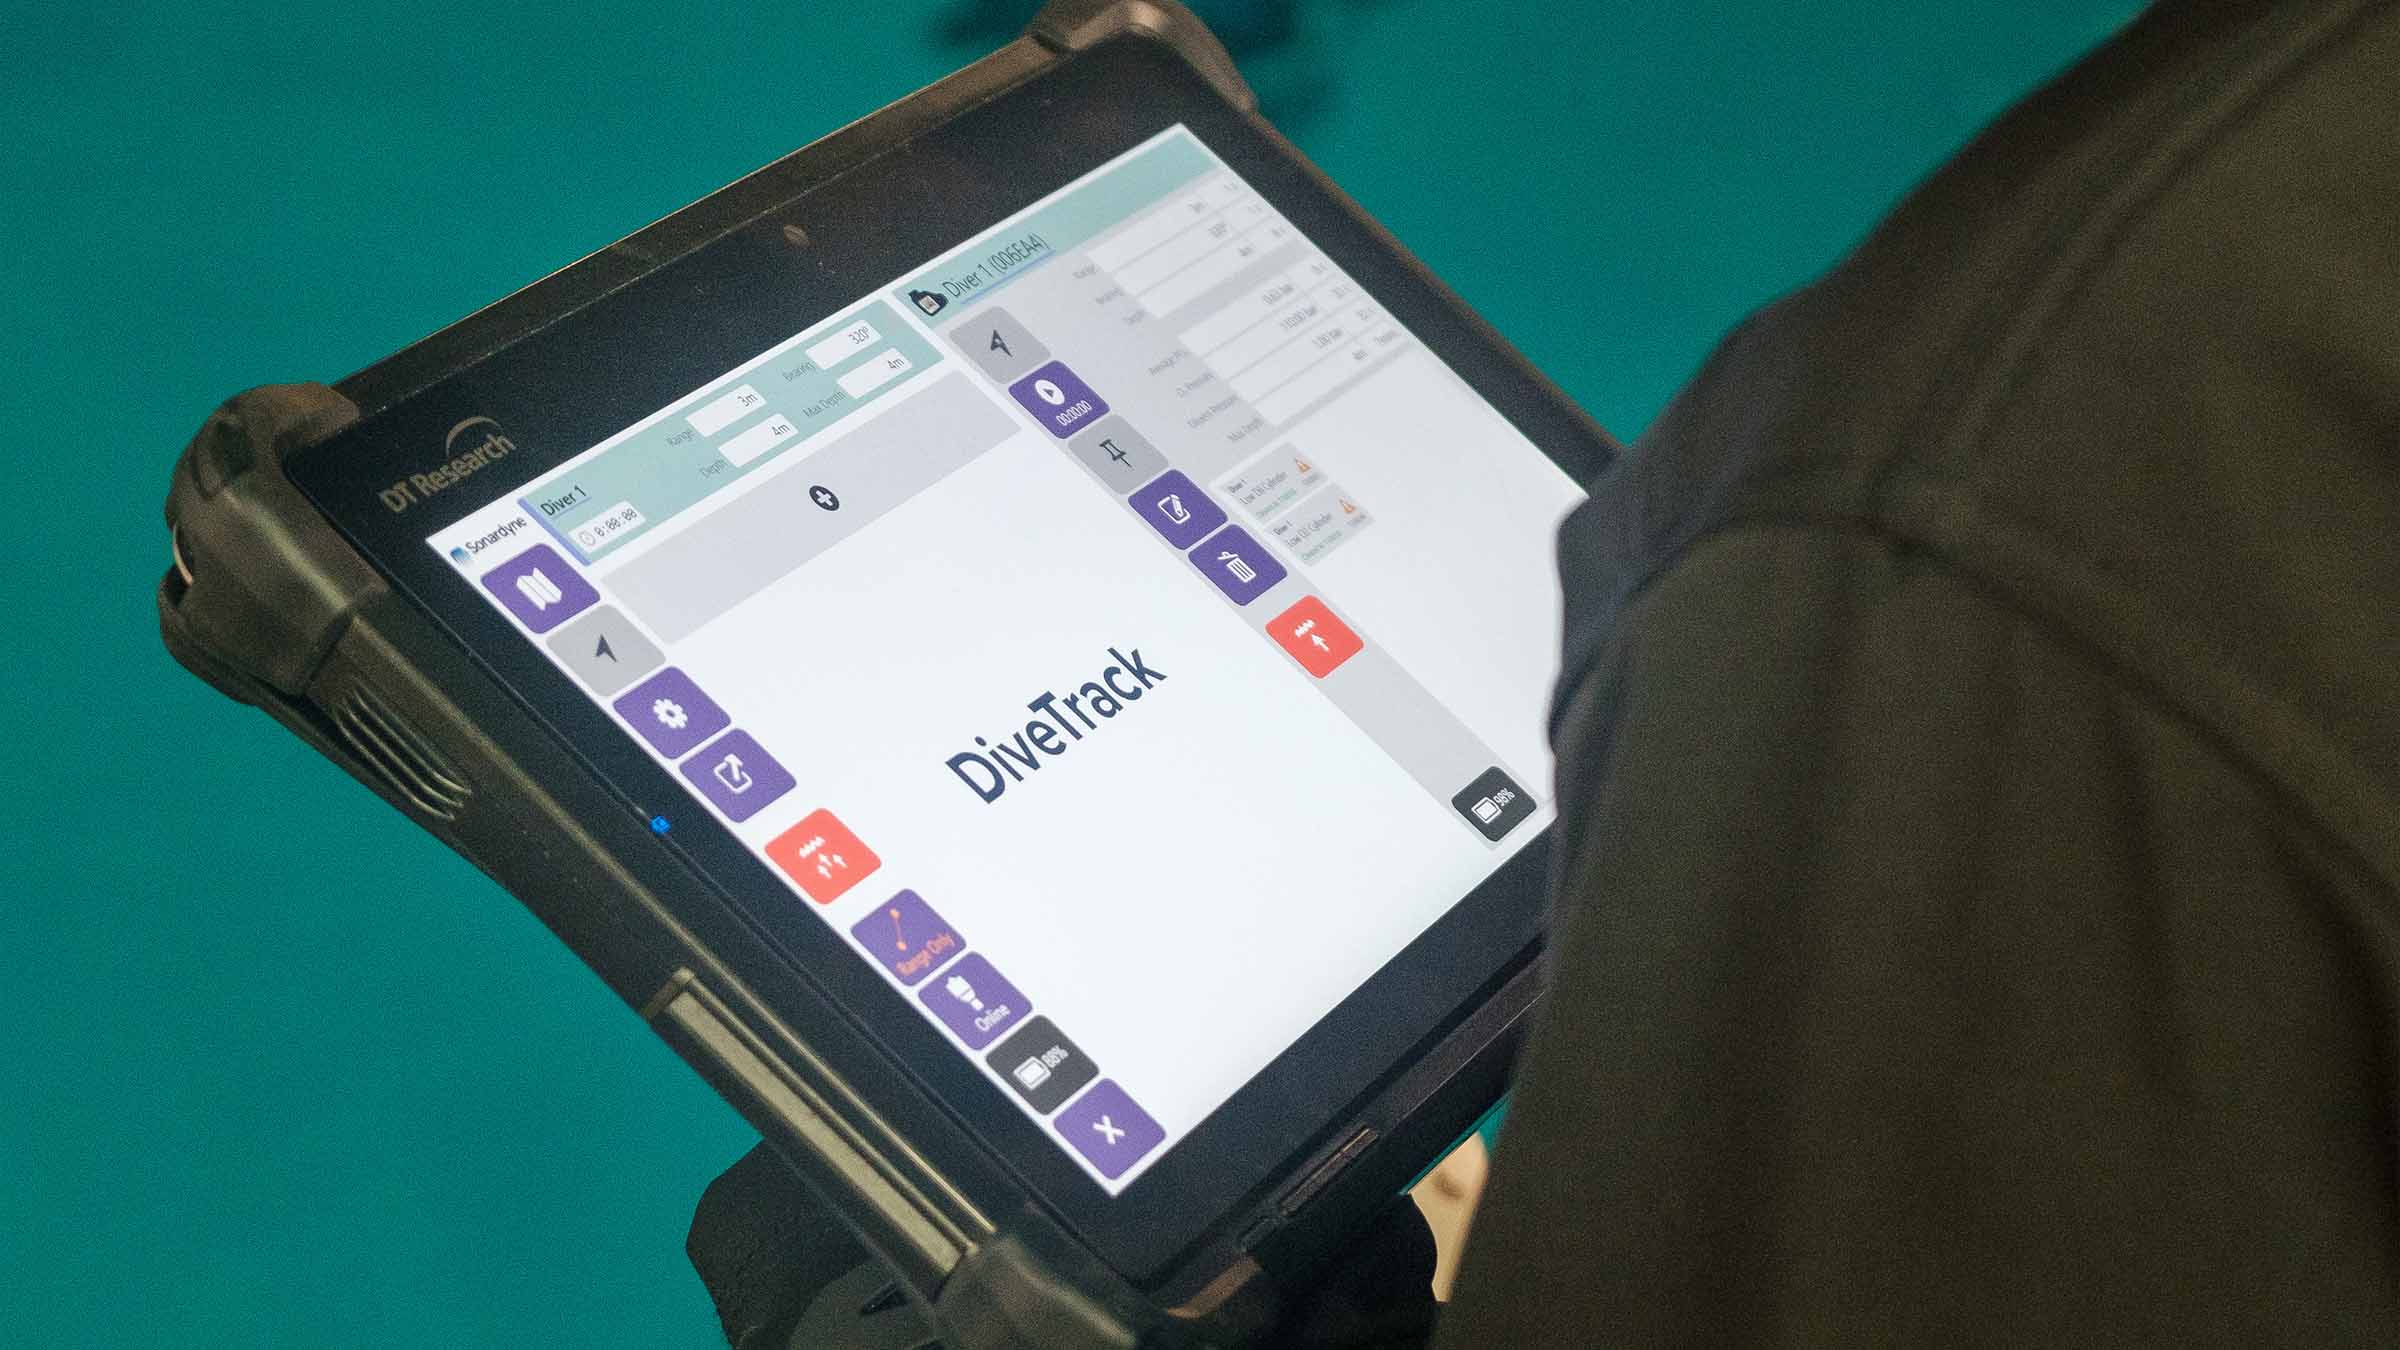 DiveTrack software on tablet